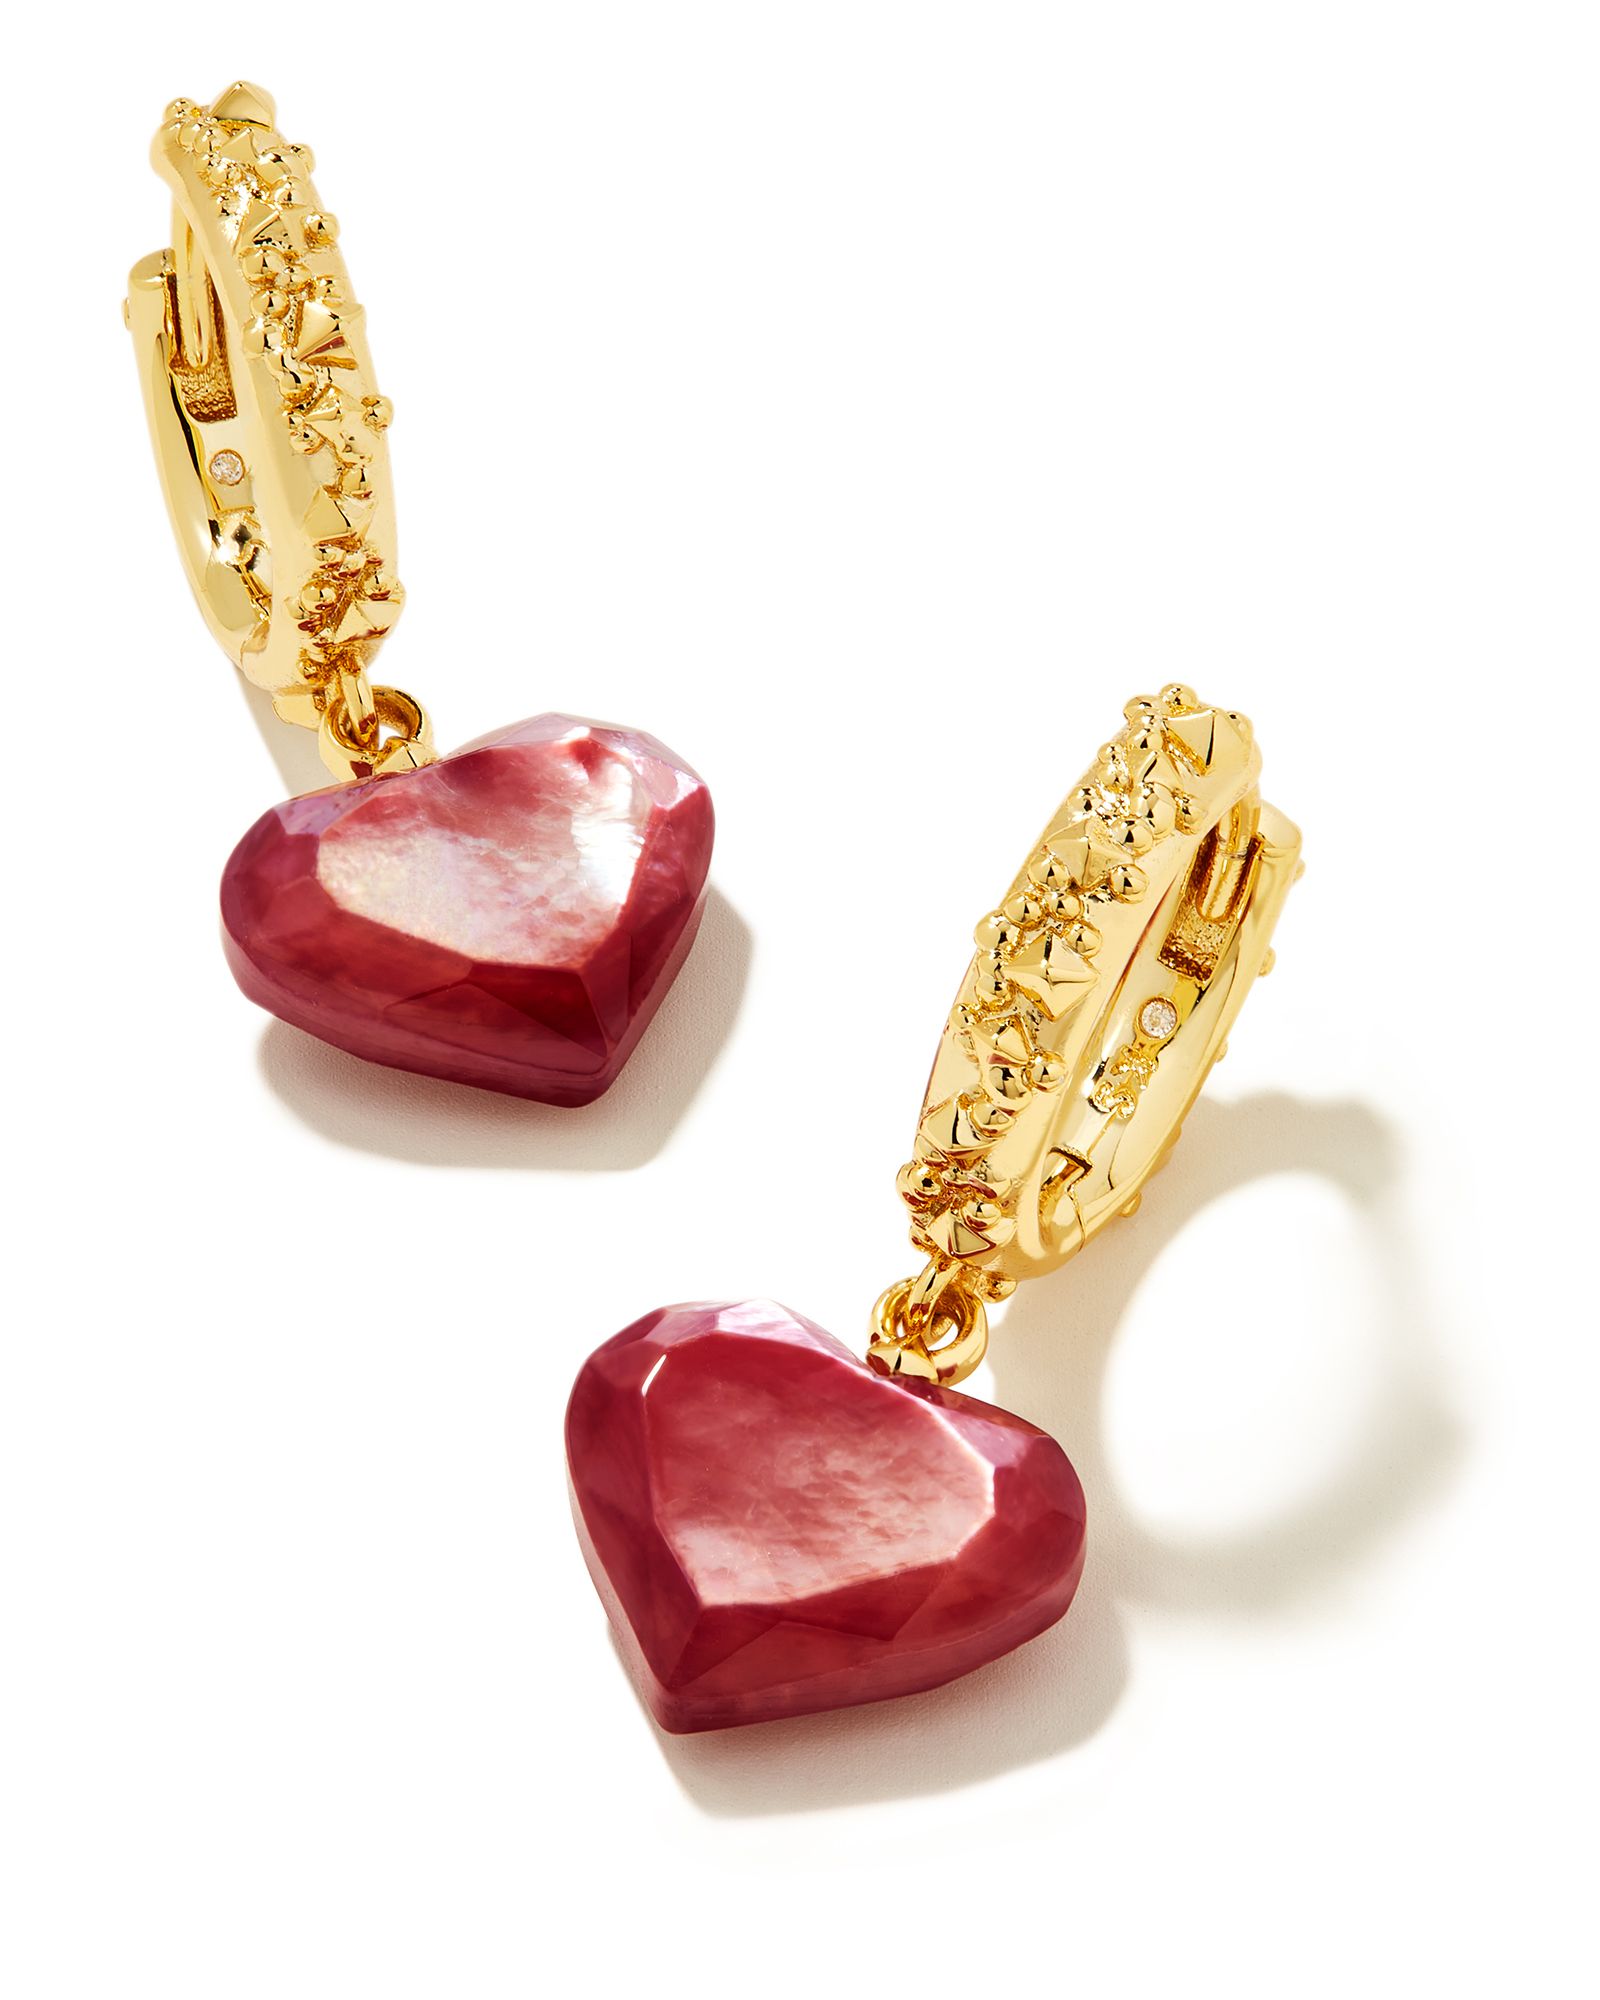 Penny Gold Heart Huggie Earrings in Mulberry Mother-of-Pearl | Kendra Scott | Kendra Scott